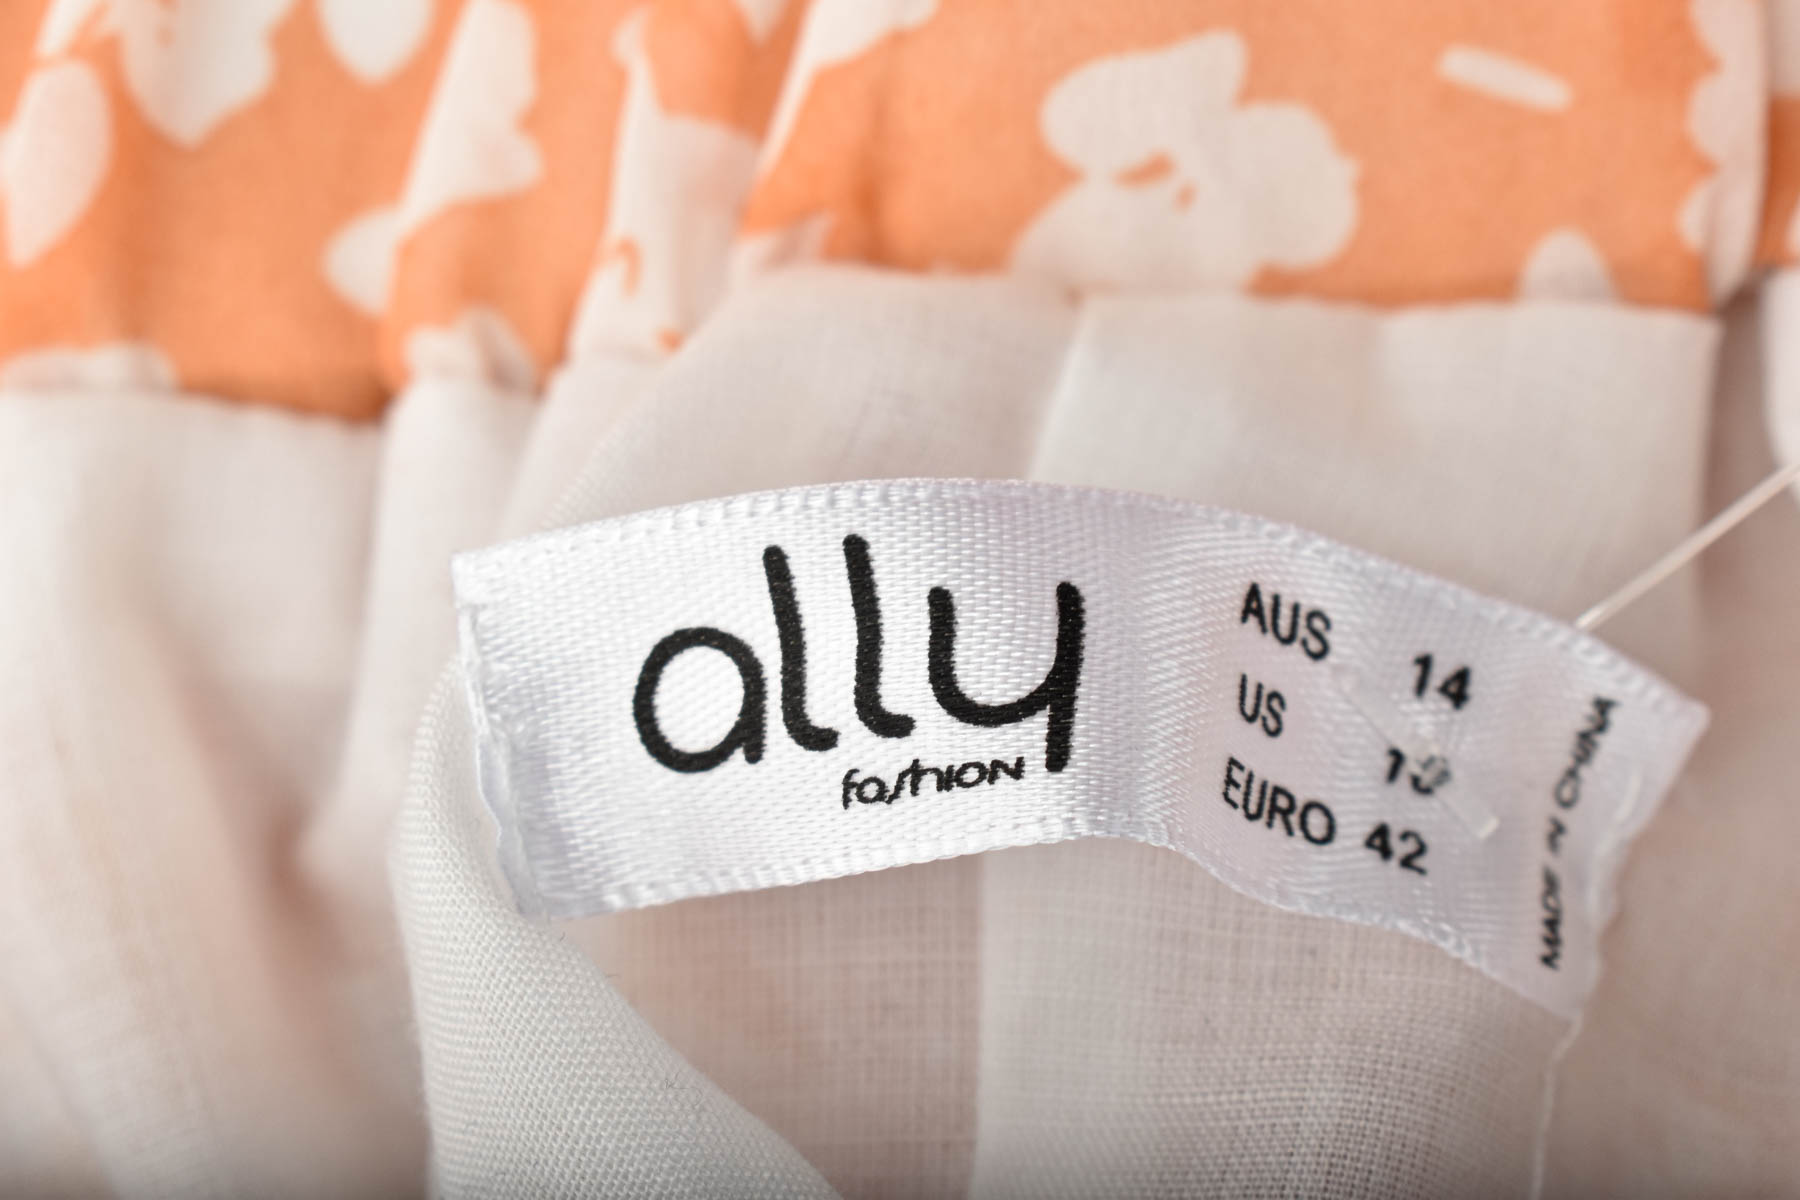 Spódnica - Ally fashion - 2